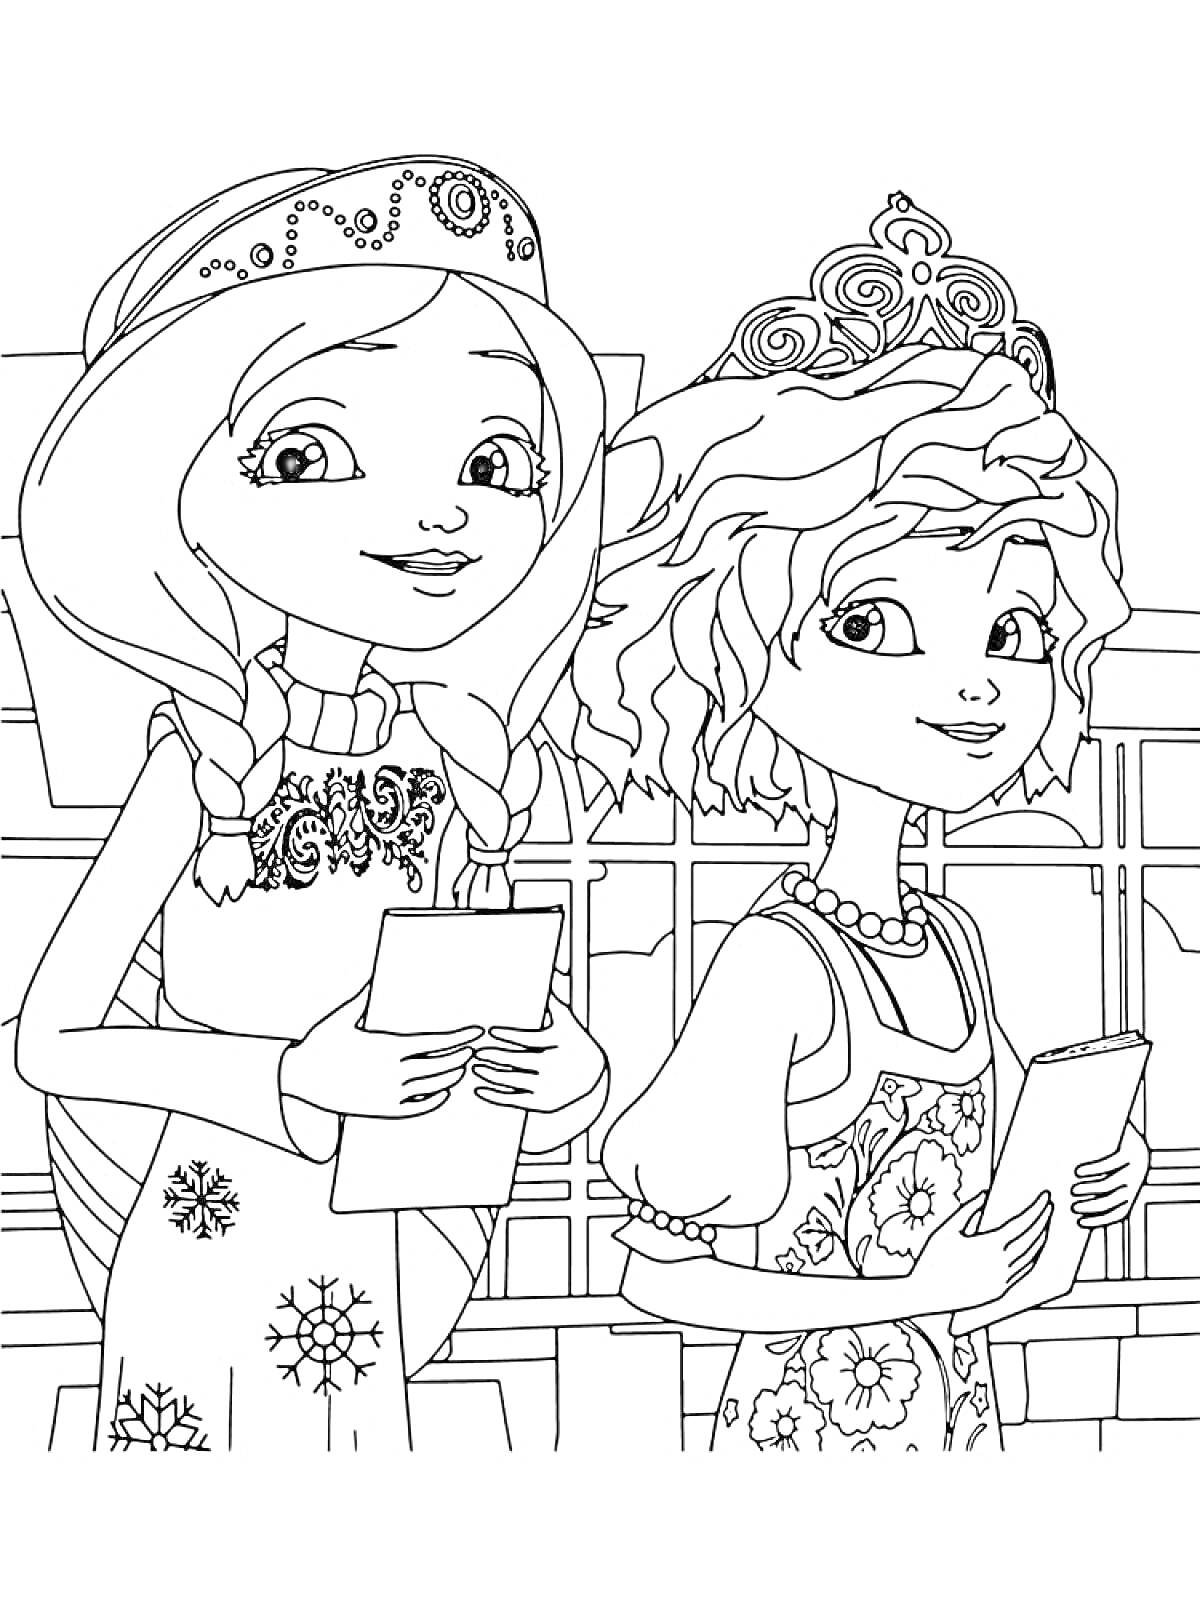 Две царевны в коронах с распущенными волосами и косичками, держат книги на фоне окна